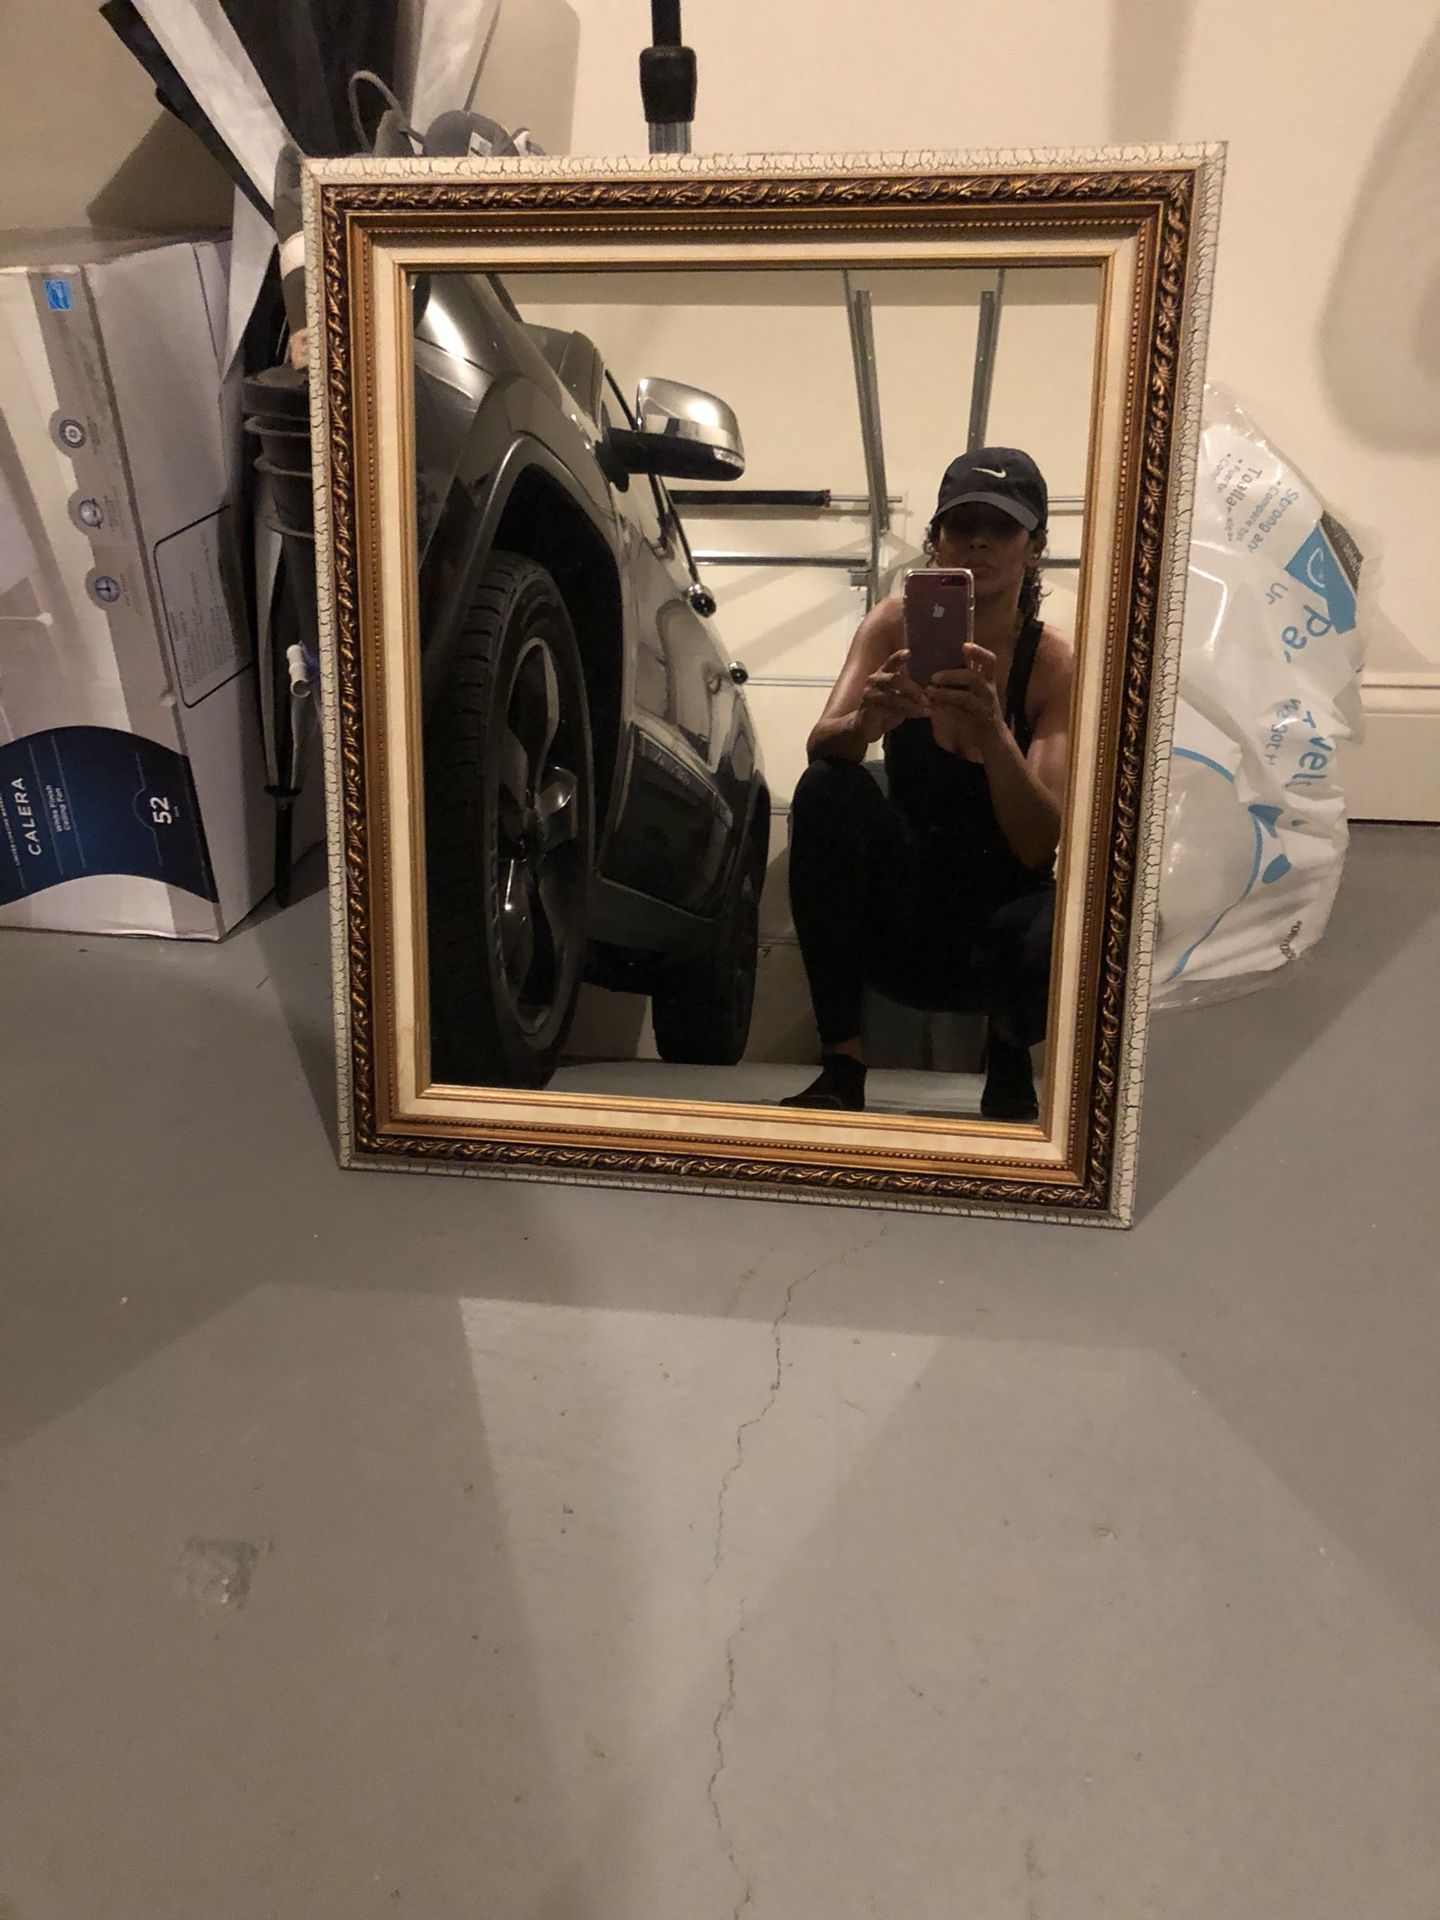 Antique-ish mirror